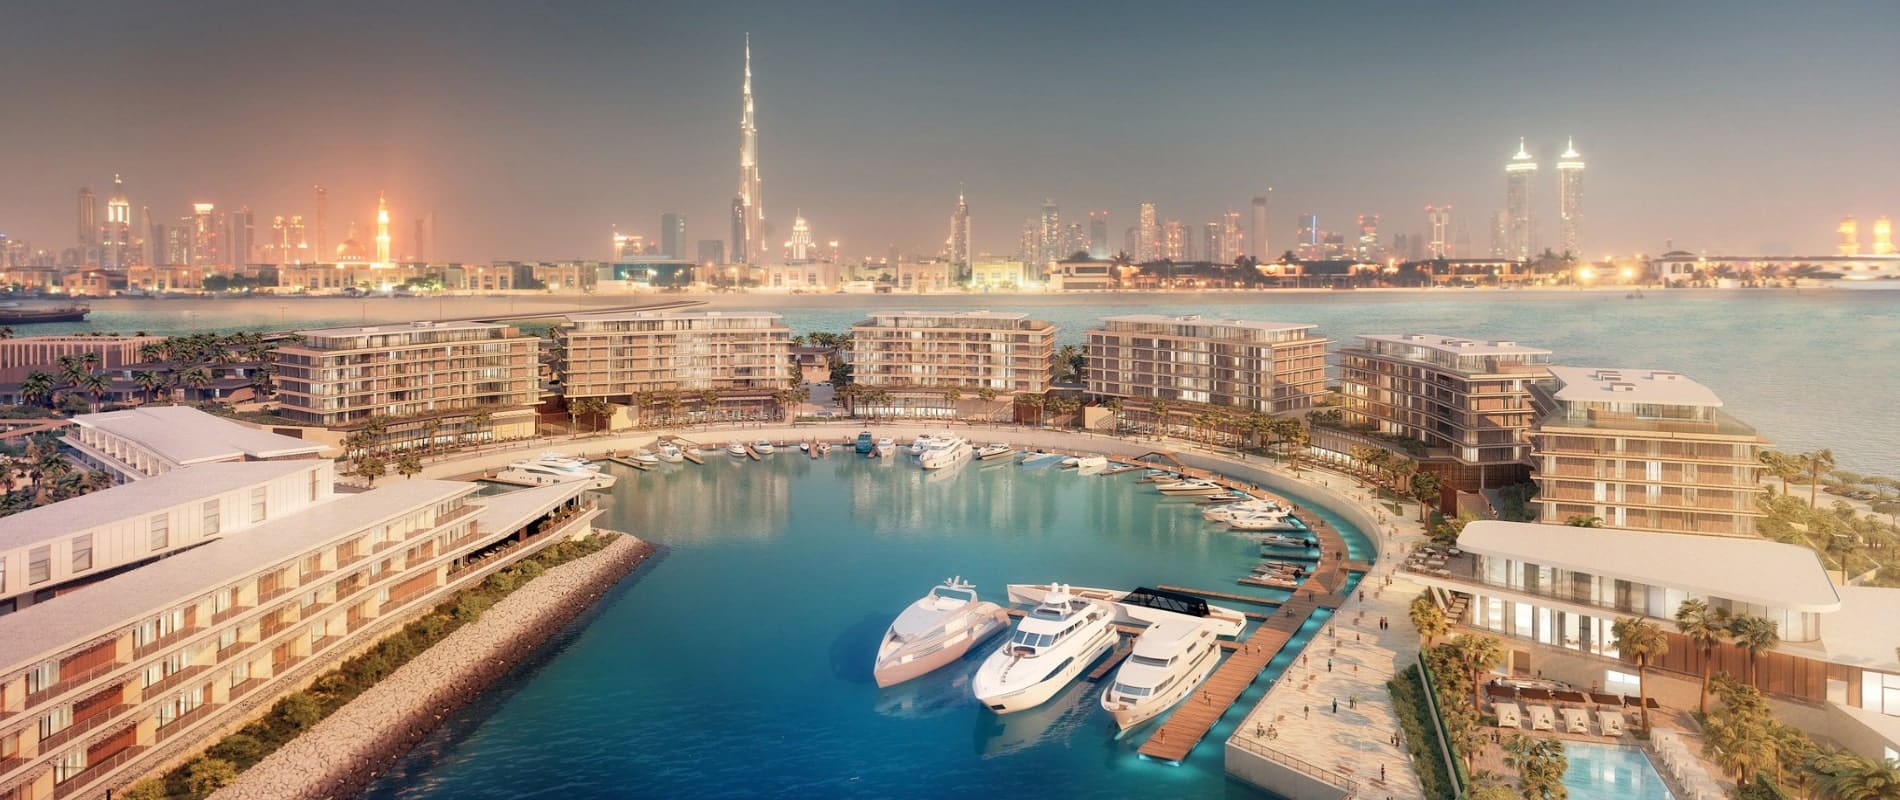 Bvlgari Marina Lofts Apartments for Sale & Rent at Jumeirah Bay